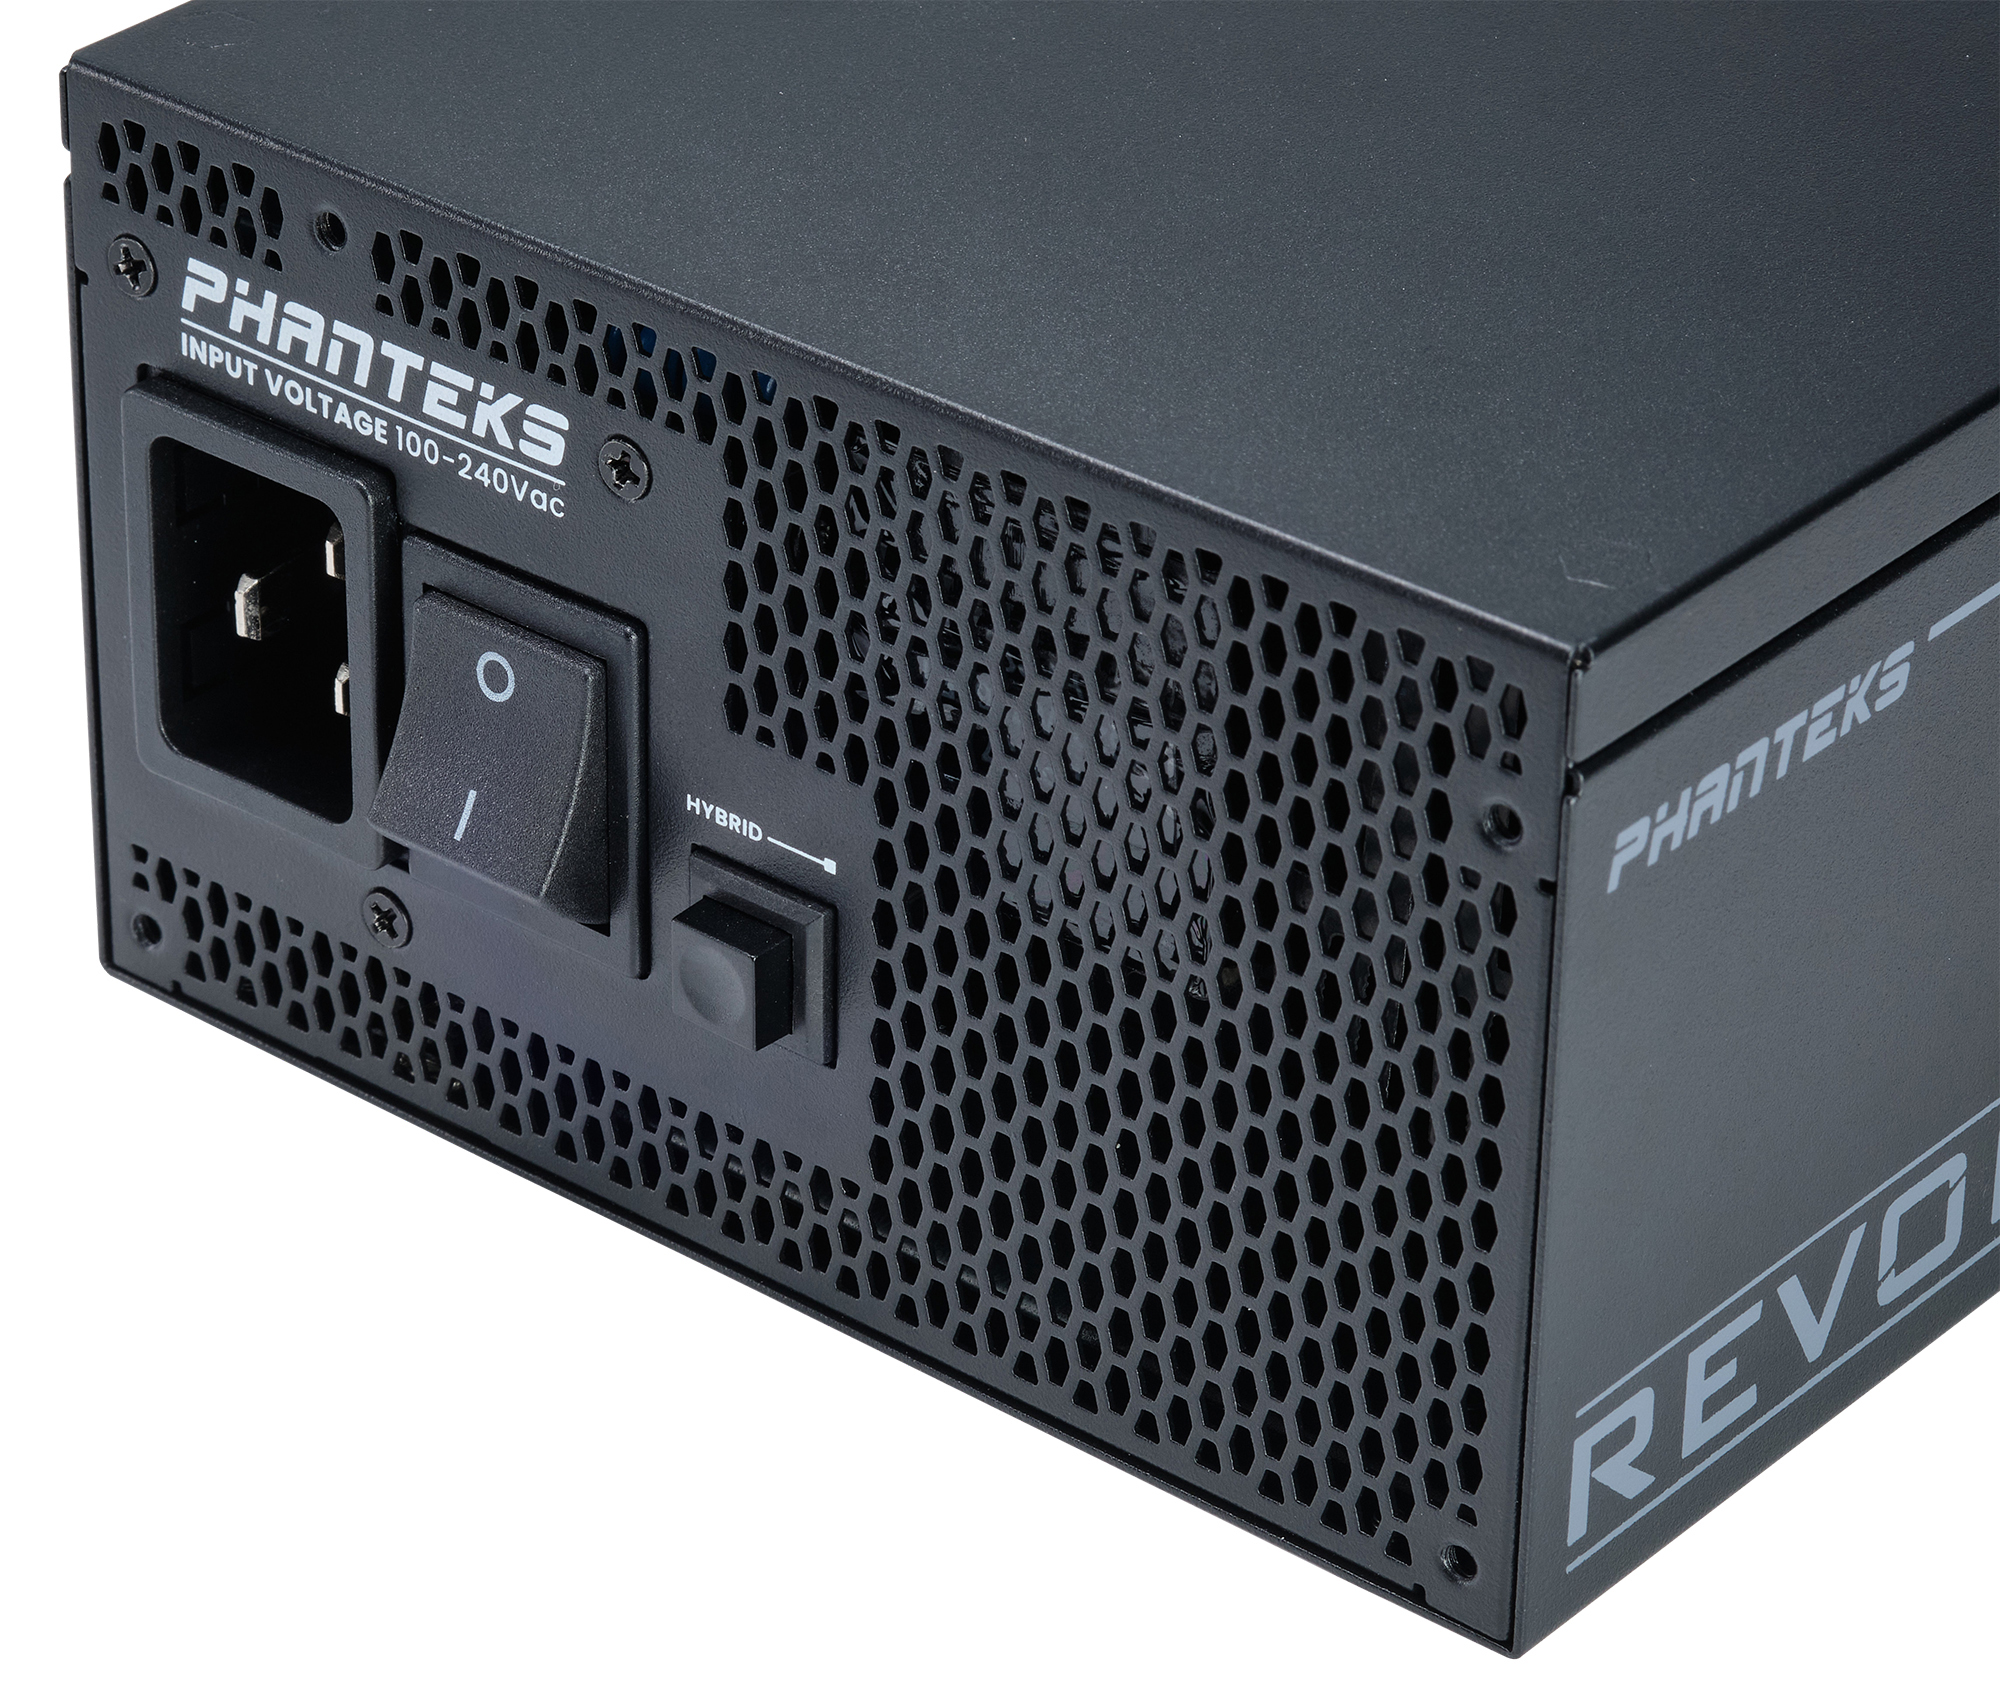 Phanteks - Fuente Modular Phanteks Revolt ATX 3.0 PCIe 5.0 1600W Titanium Preta (Sin Cables Incluídos)